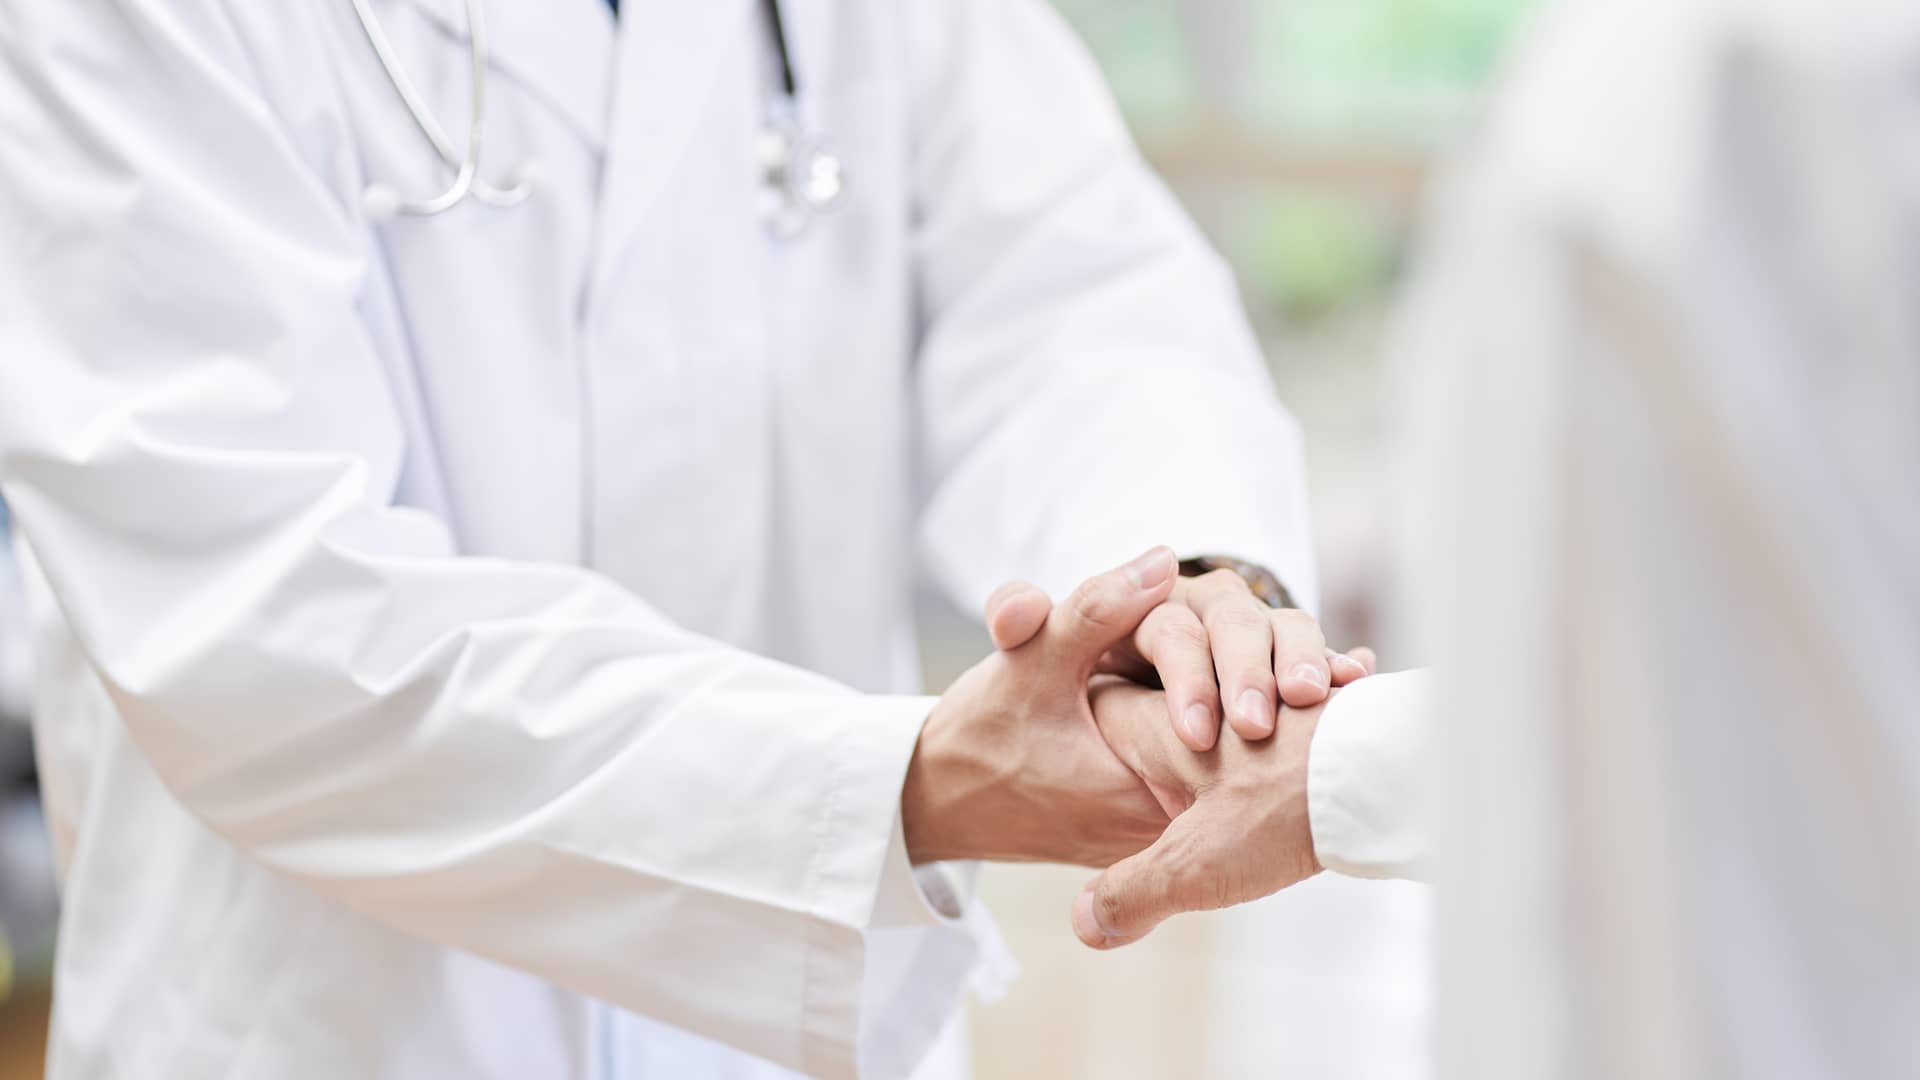 Detalle de médico dando la mano a paciente simboliza seguridad de estar en el mejor seguro médico